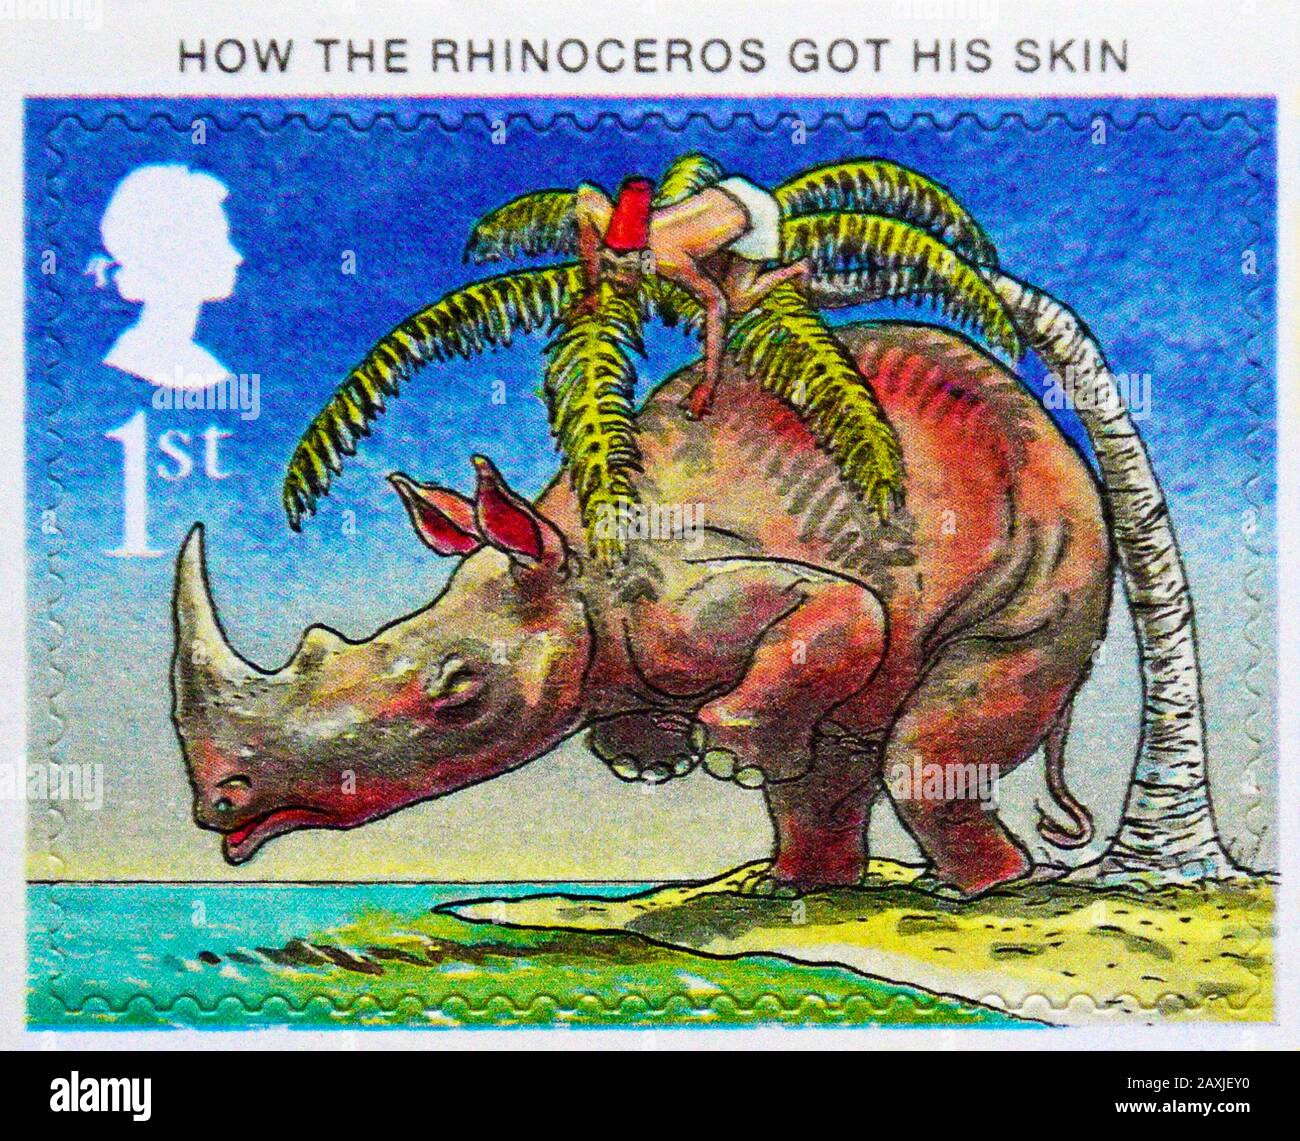 Briefmarke. Großbritannien. Königin Elizabeth II Das hundertjährige Jubiläum der Veröffentlichung von "Just So Stories" von Rudyard Kipling. "Wie die Rhinozeros seine Haut bekamen". Stockfoto